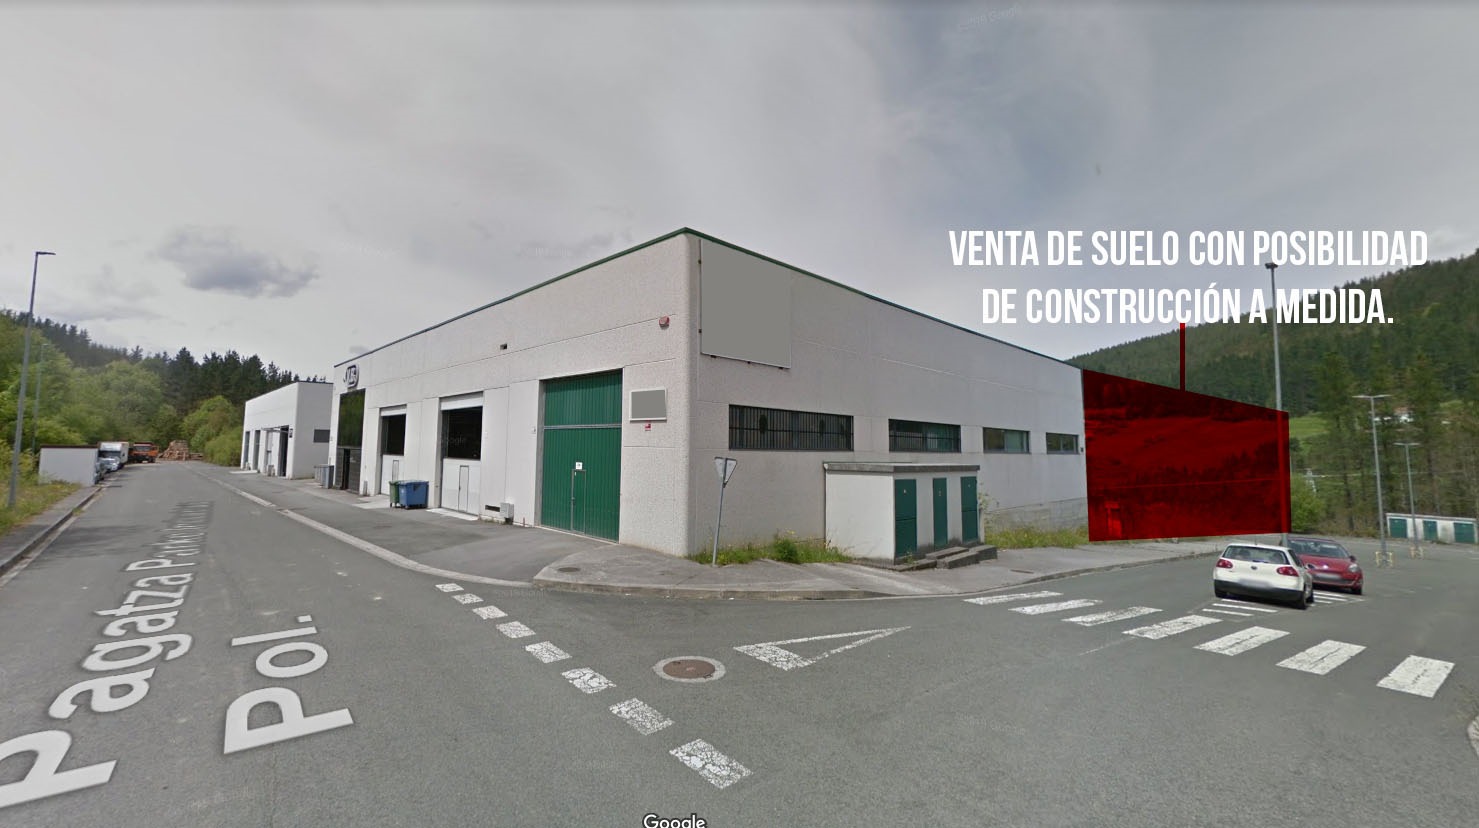 Elgeta Lehenengo Erreka Venta de suelo para construccion de pabellon industrial Grupo Eibar Inmobiliario pabellon y suelo elgeta